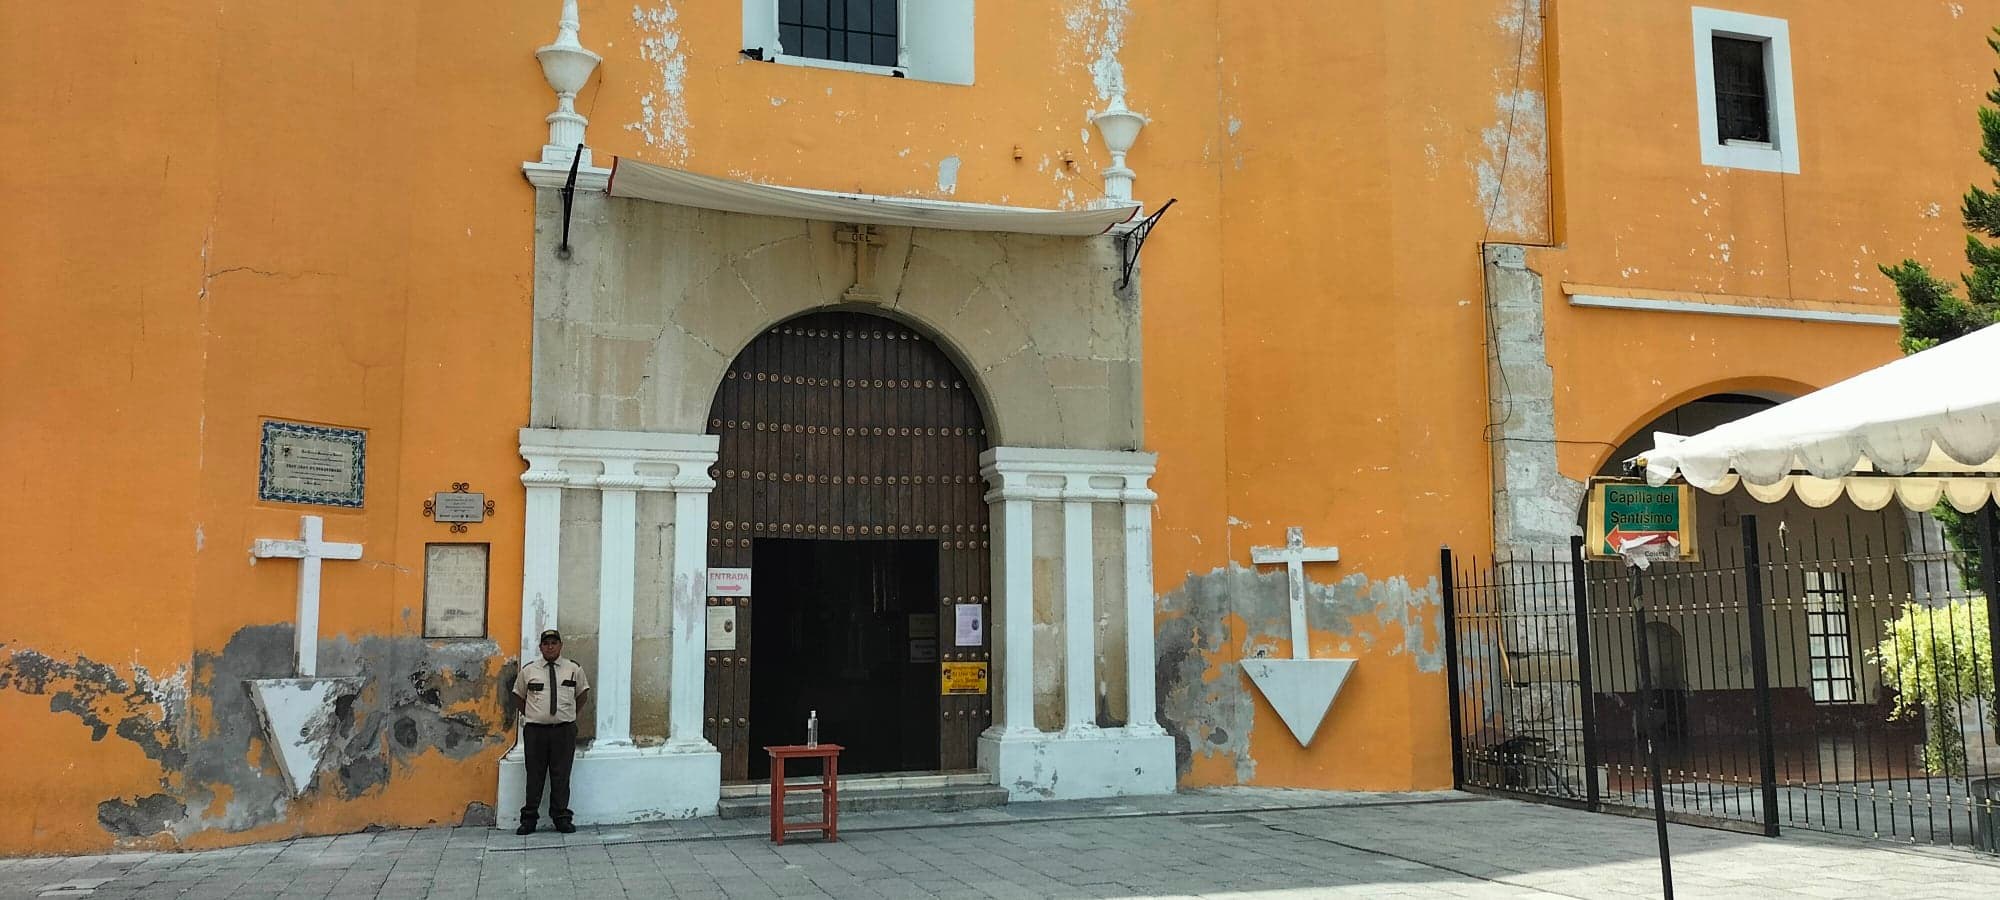 Ladrones roban curato de la iglesia de San Francisco de Asís en Tehuacán  